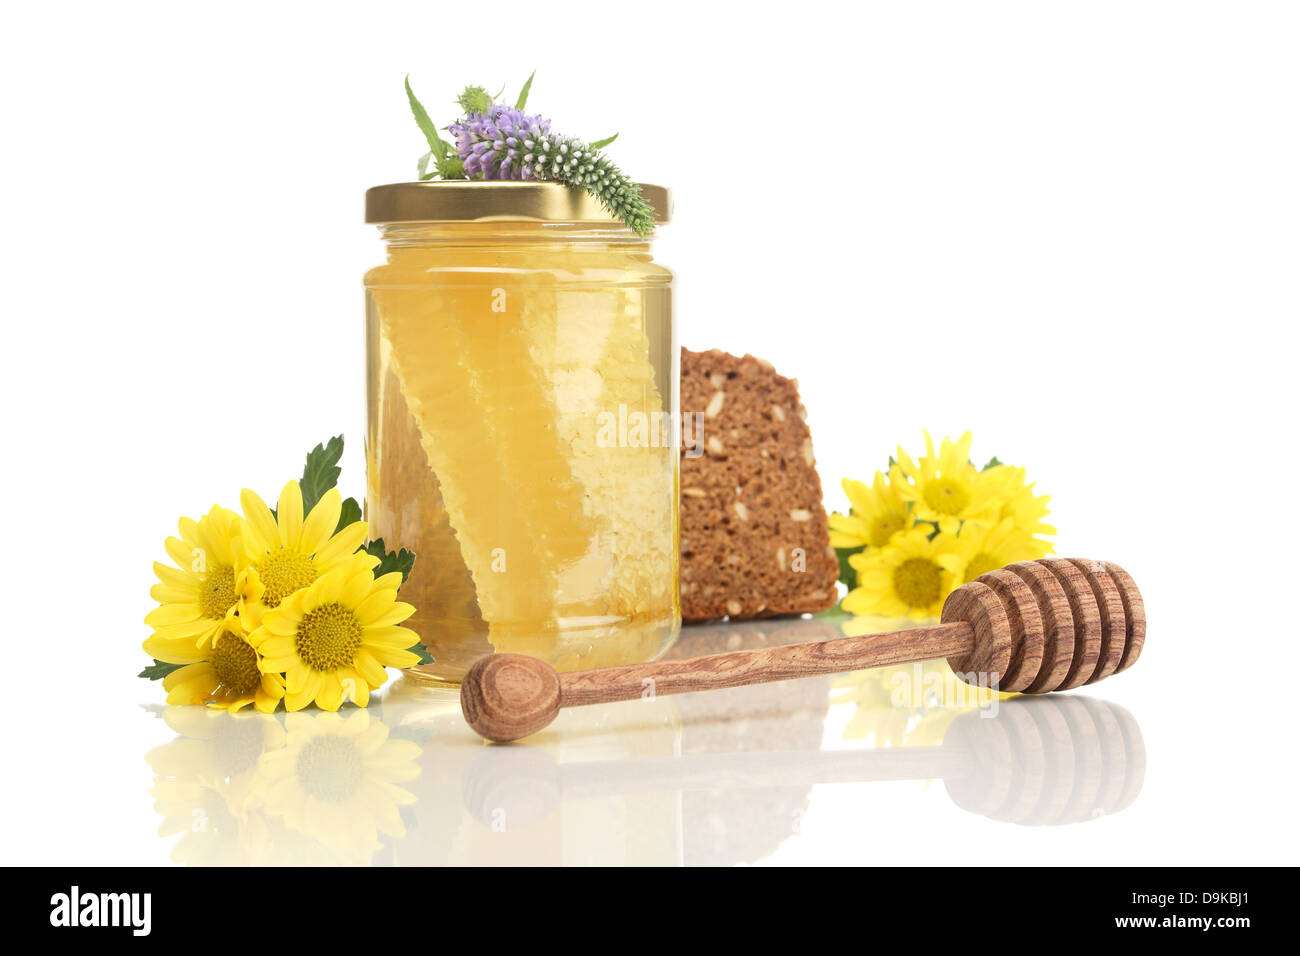 Miele di favo con pane integrale, cucchiaio di miele e fiori, miele di favo con pane integrale, miele e fiori cucchiaio Foto Stock